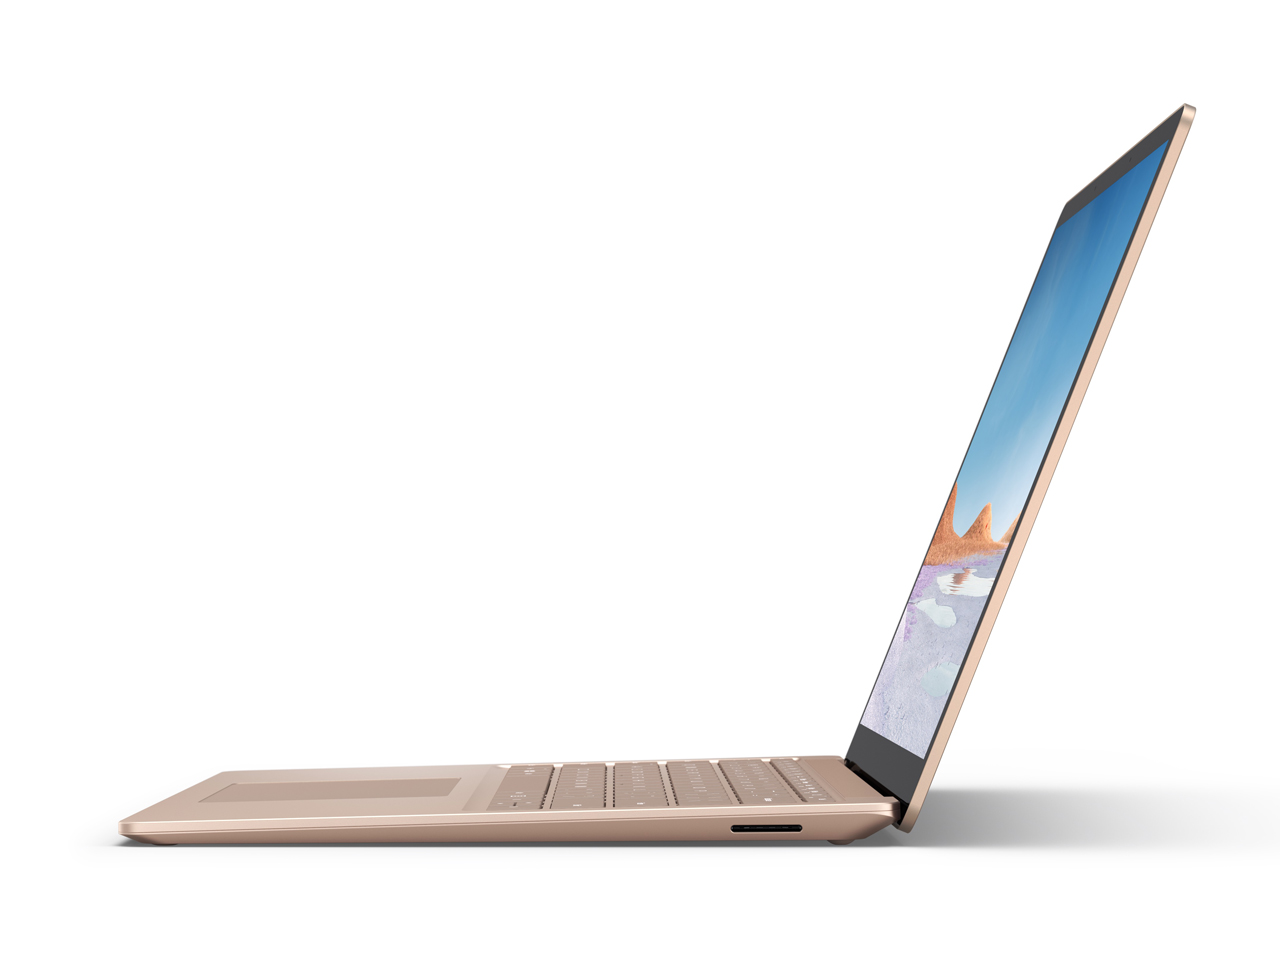 価格.com - 『本体 右側面』 Surface Laptop 3 13.5インチ V4C-00081 [サンドストーン] の製品画像